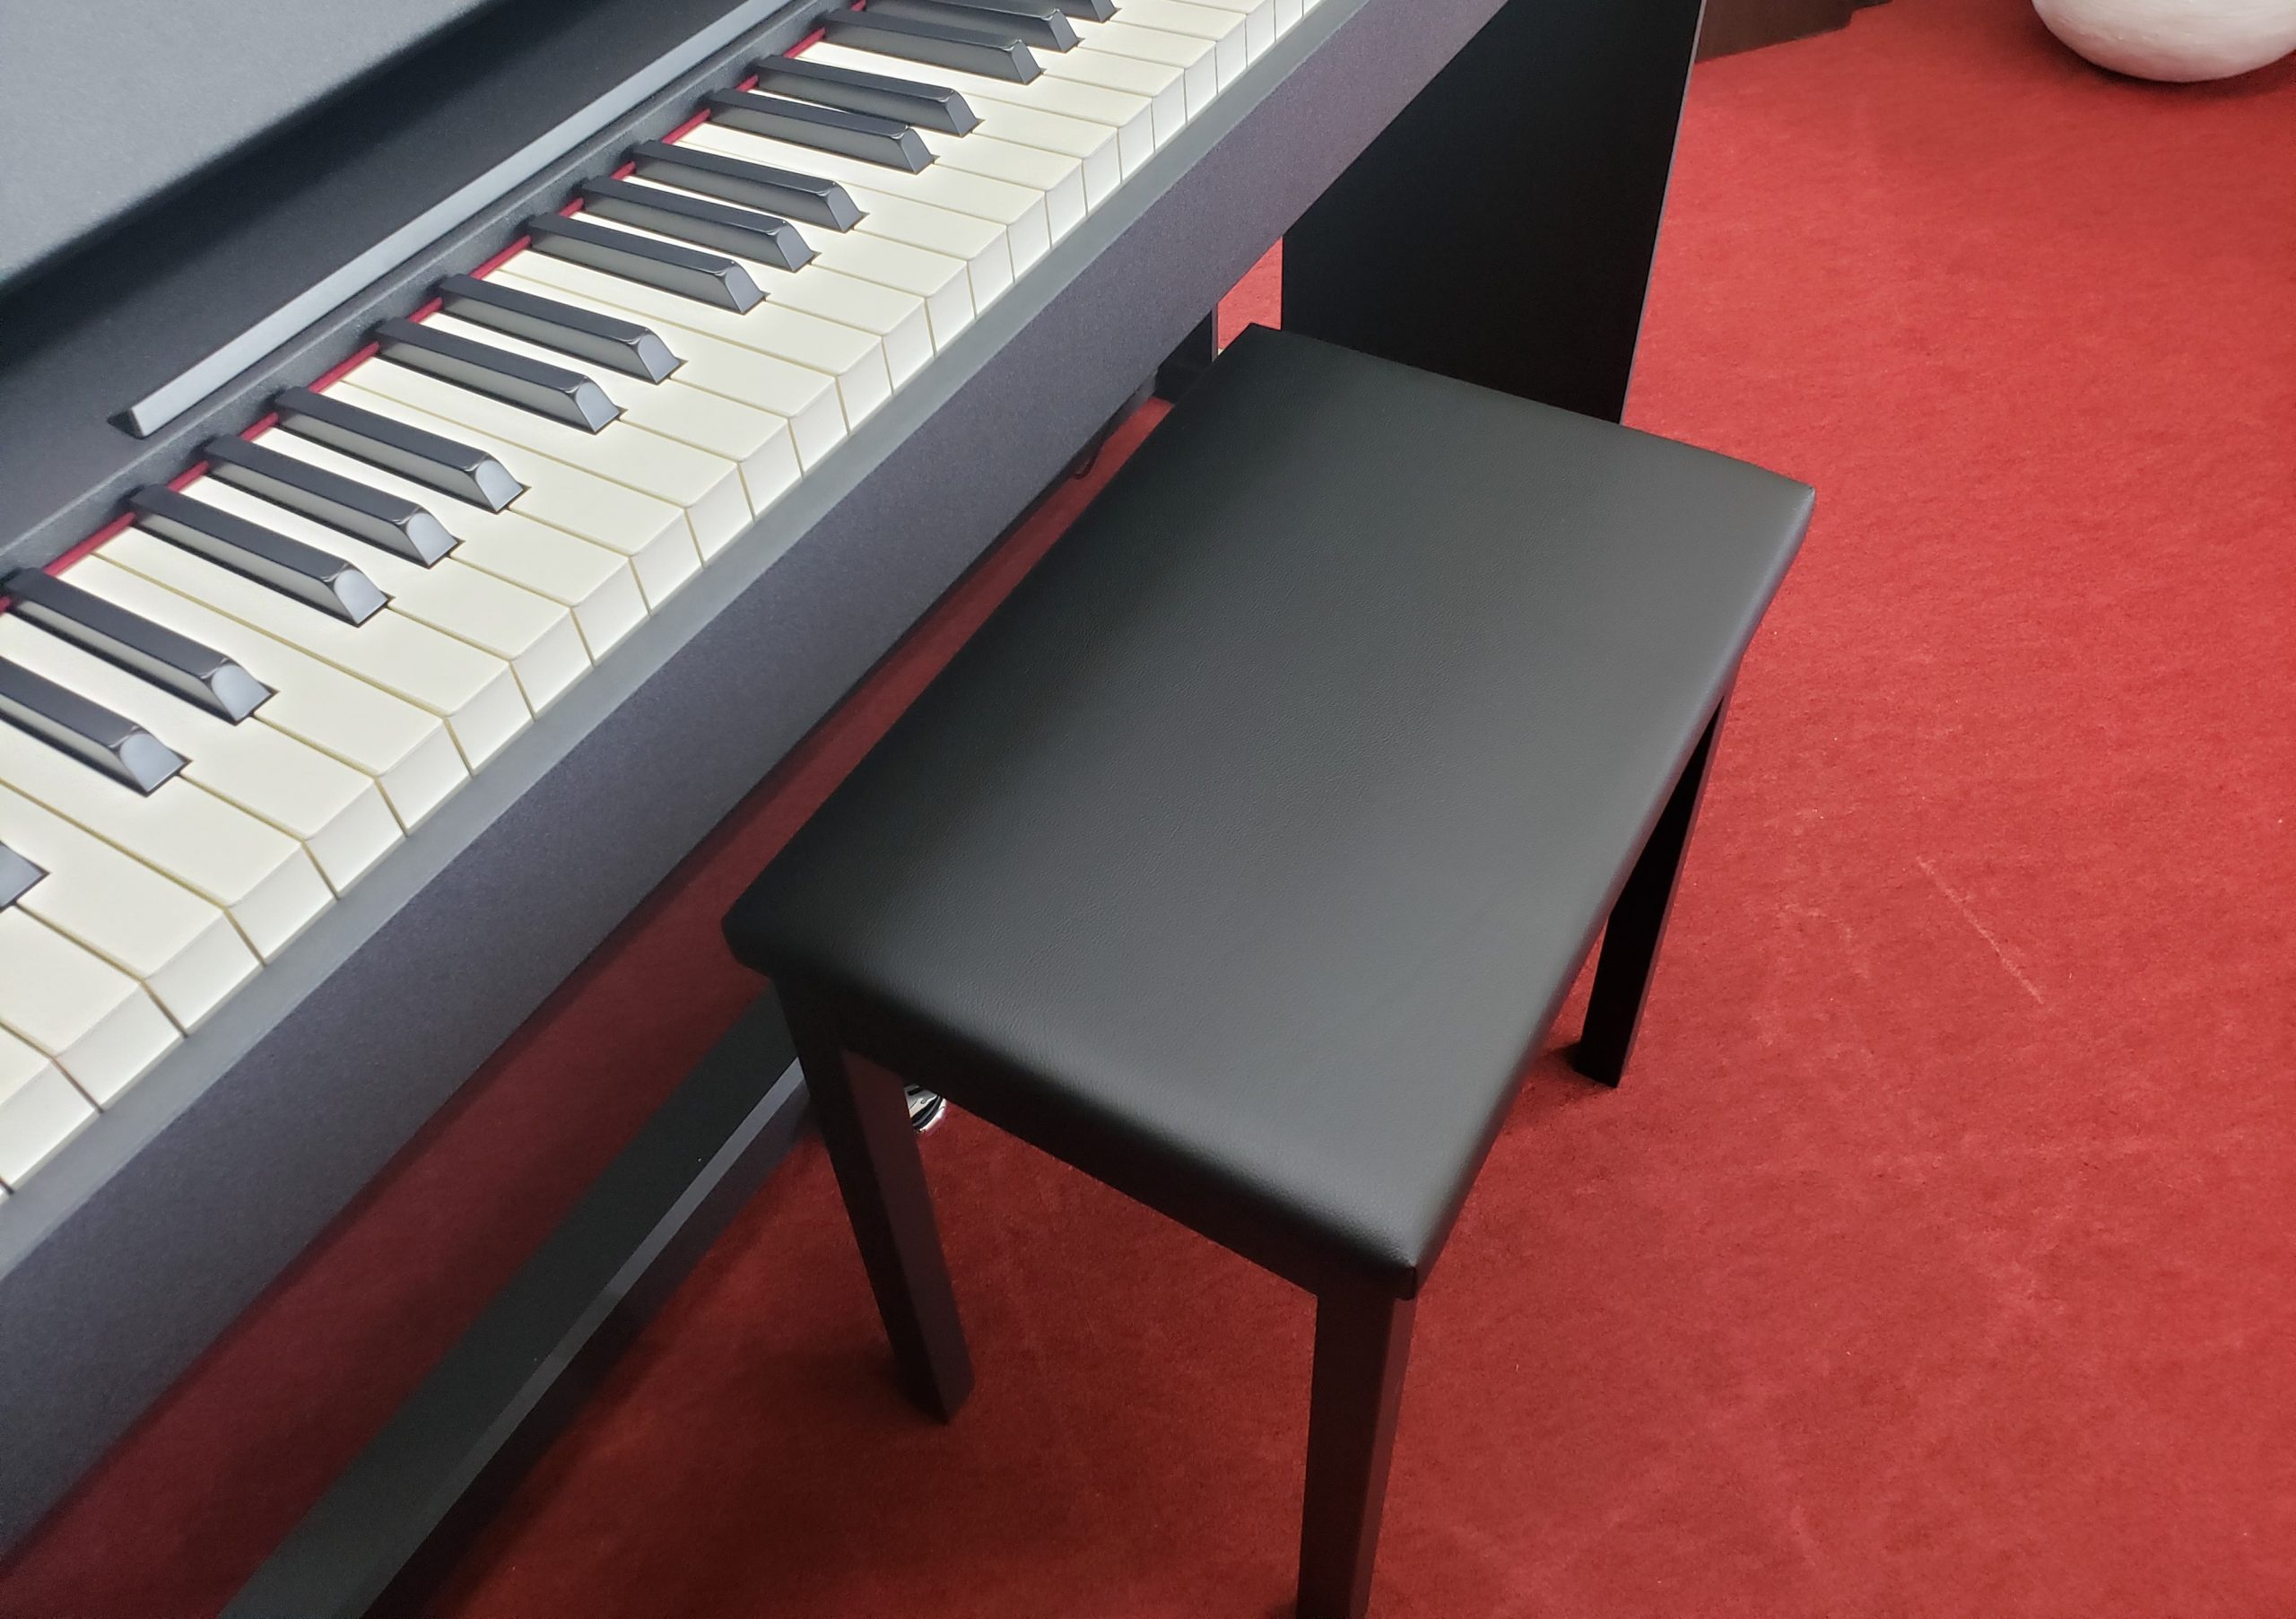 新品電子ピアノ Roland F107-BK